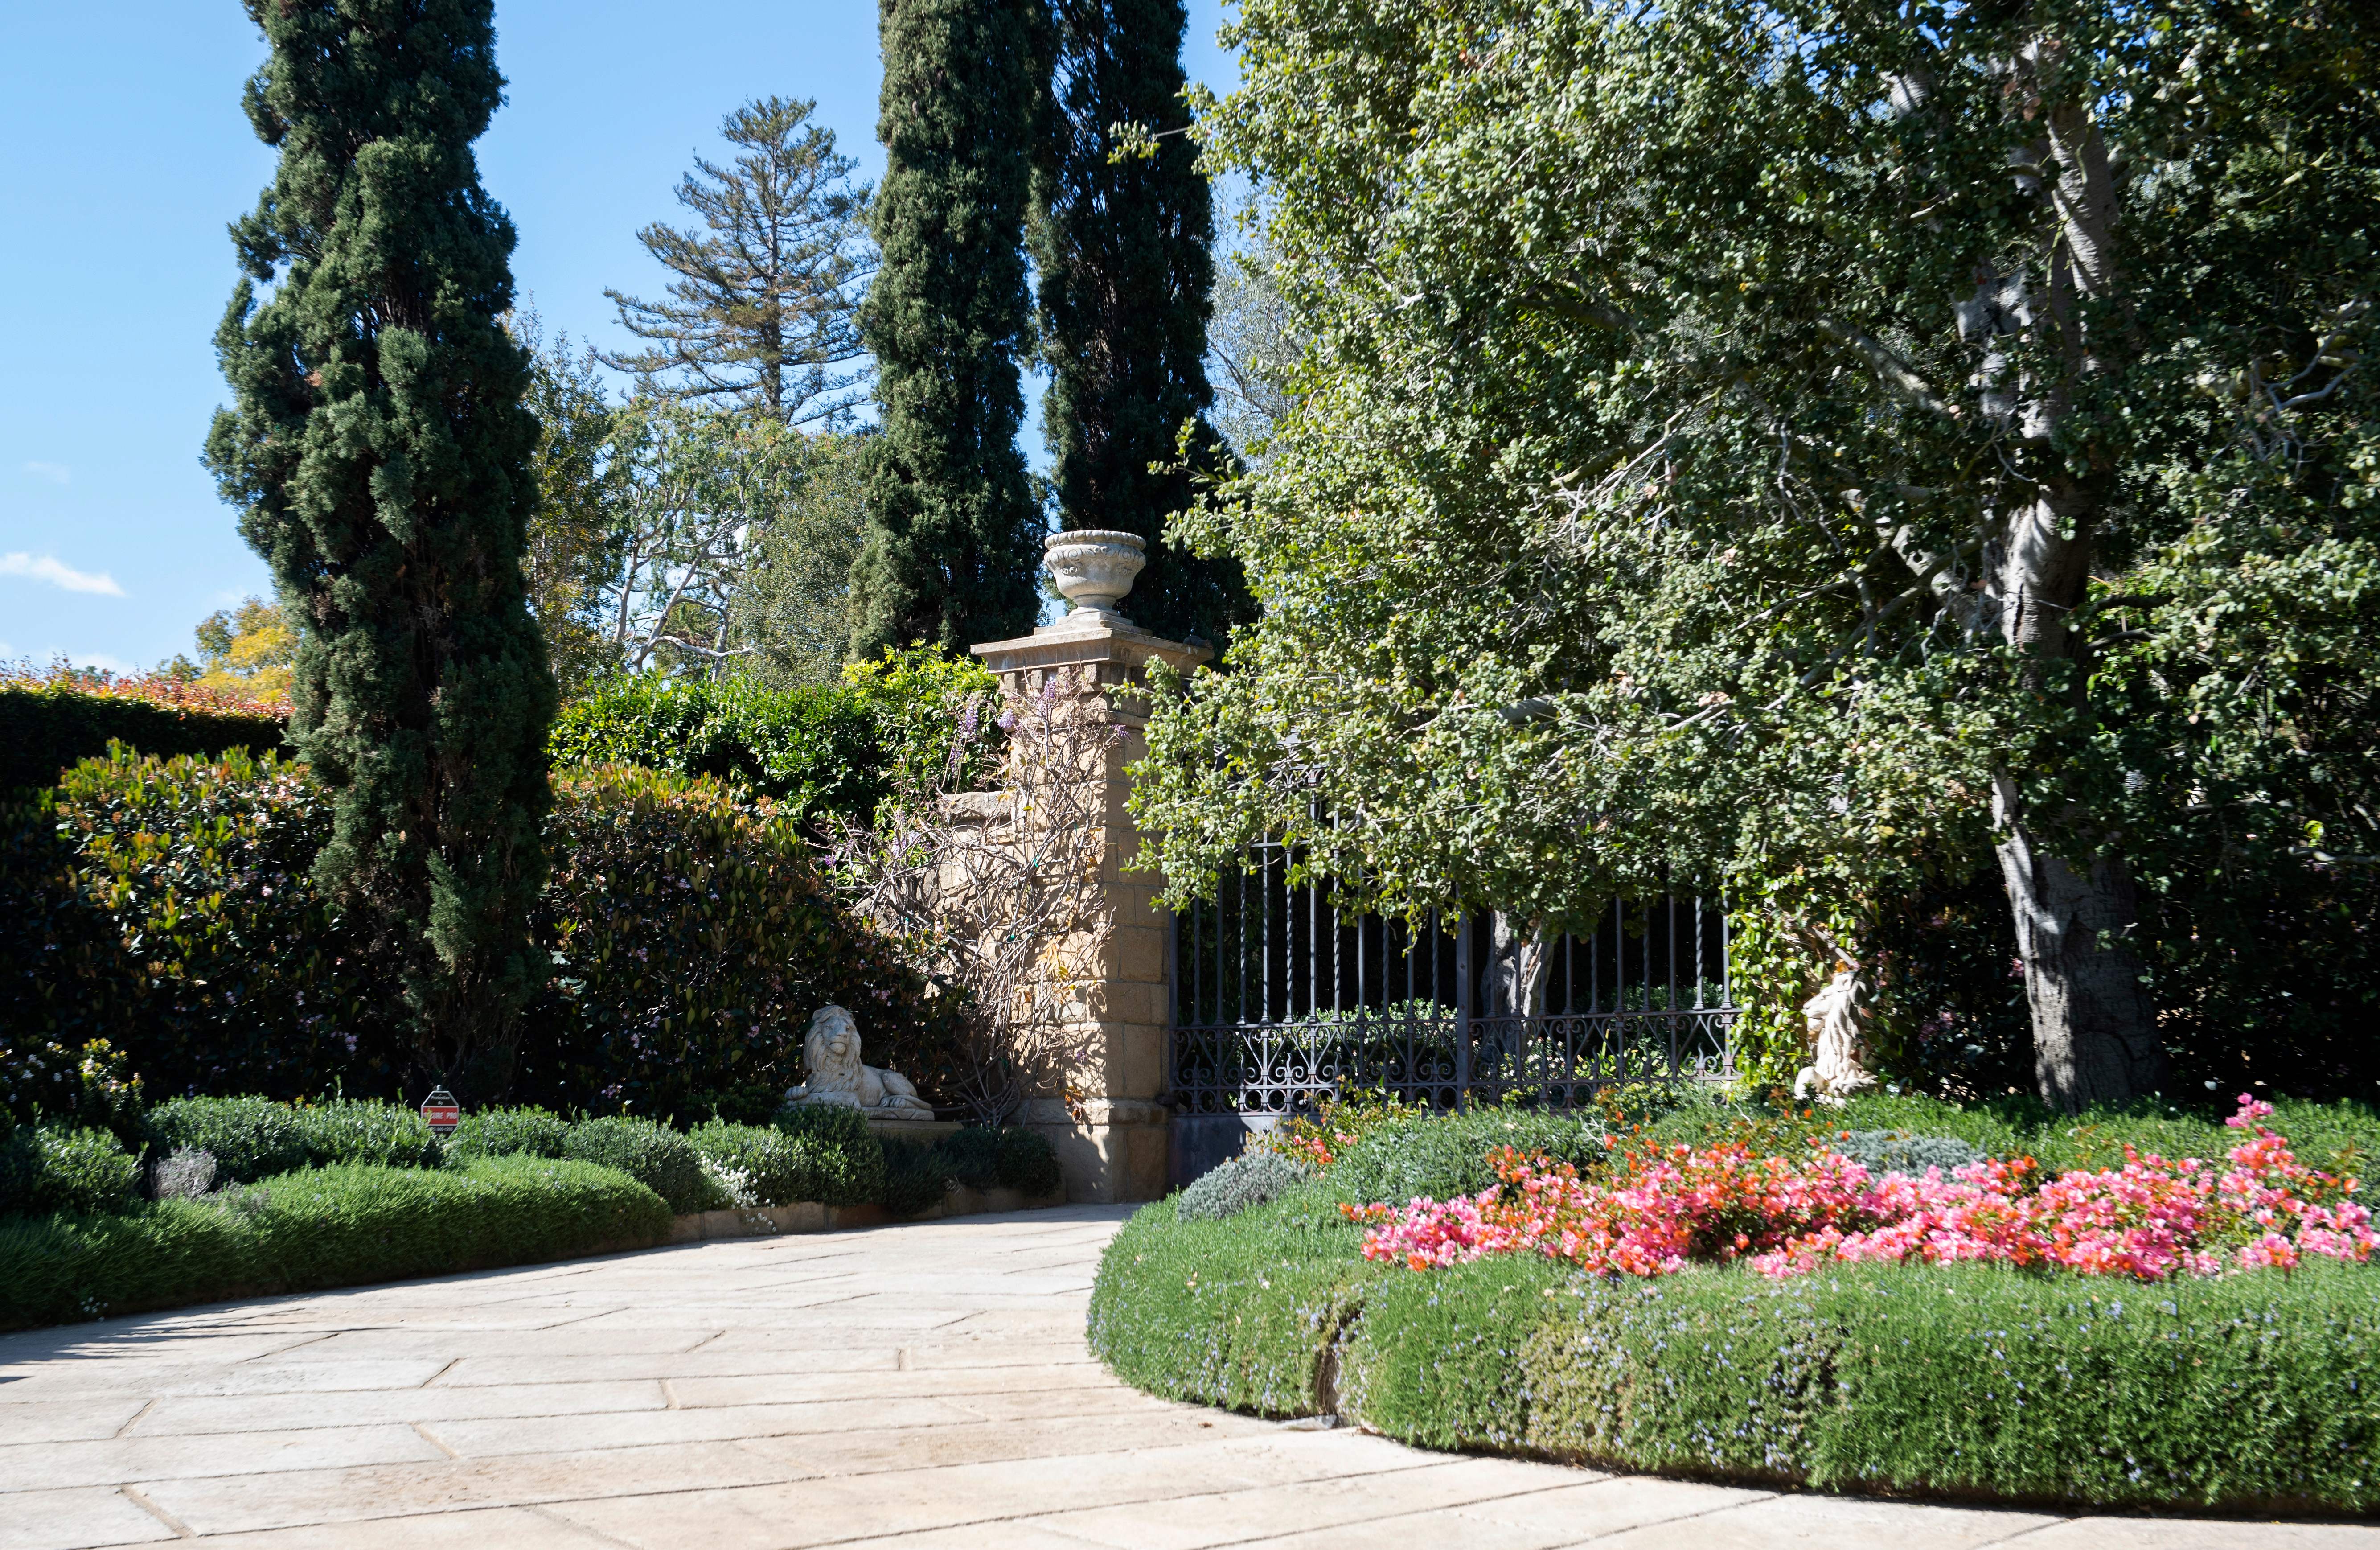 La puerta principal de la propiedad de Montecito, California, donde viven el príncipe Harry y Meghan Markle, 2021. | Foto: Getty Images